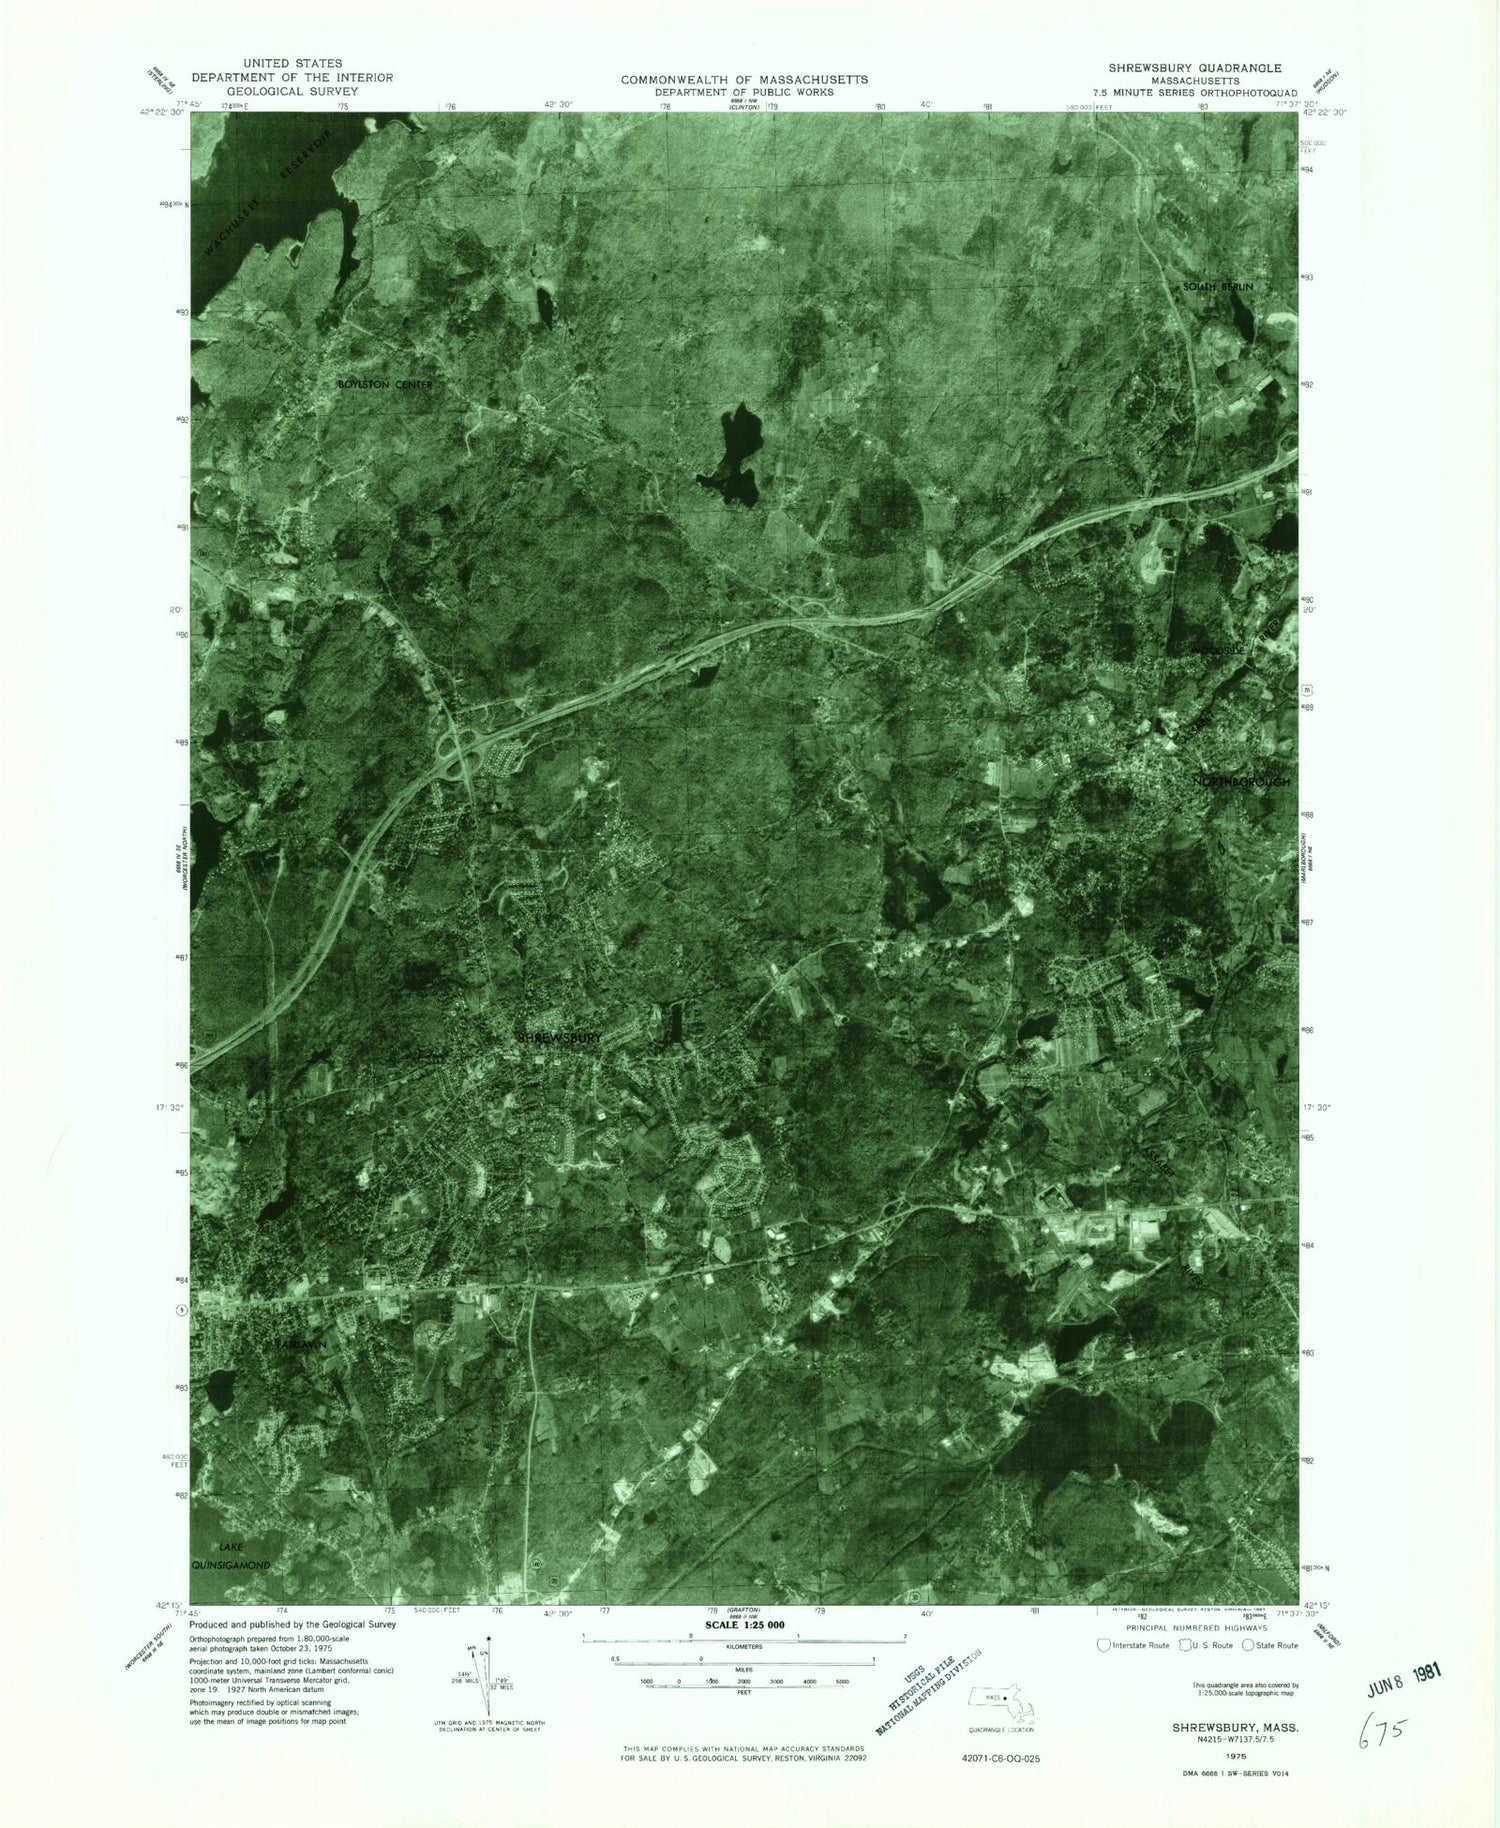 Classic USGS Shrewsbury Massachusetts 7.5'x7.5' Topo Map Image